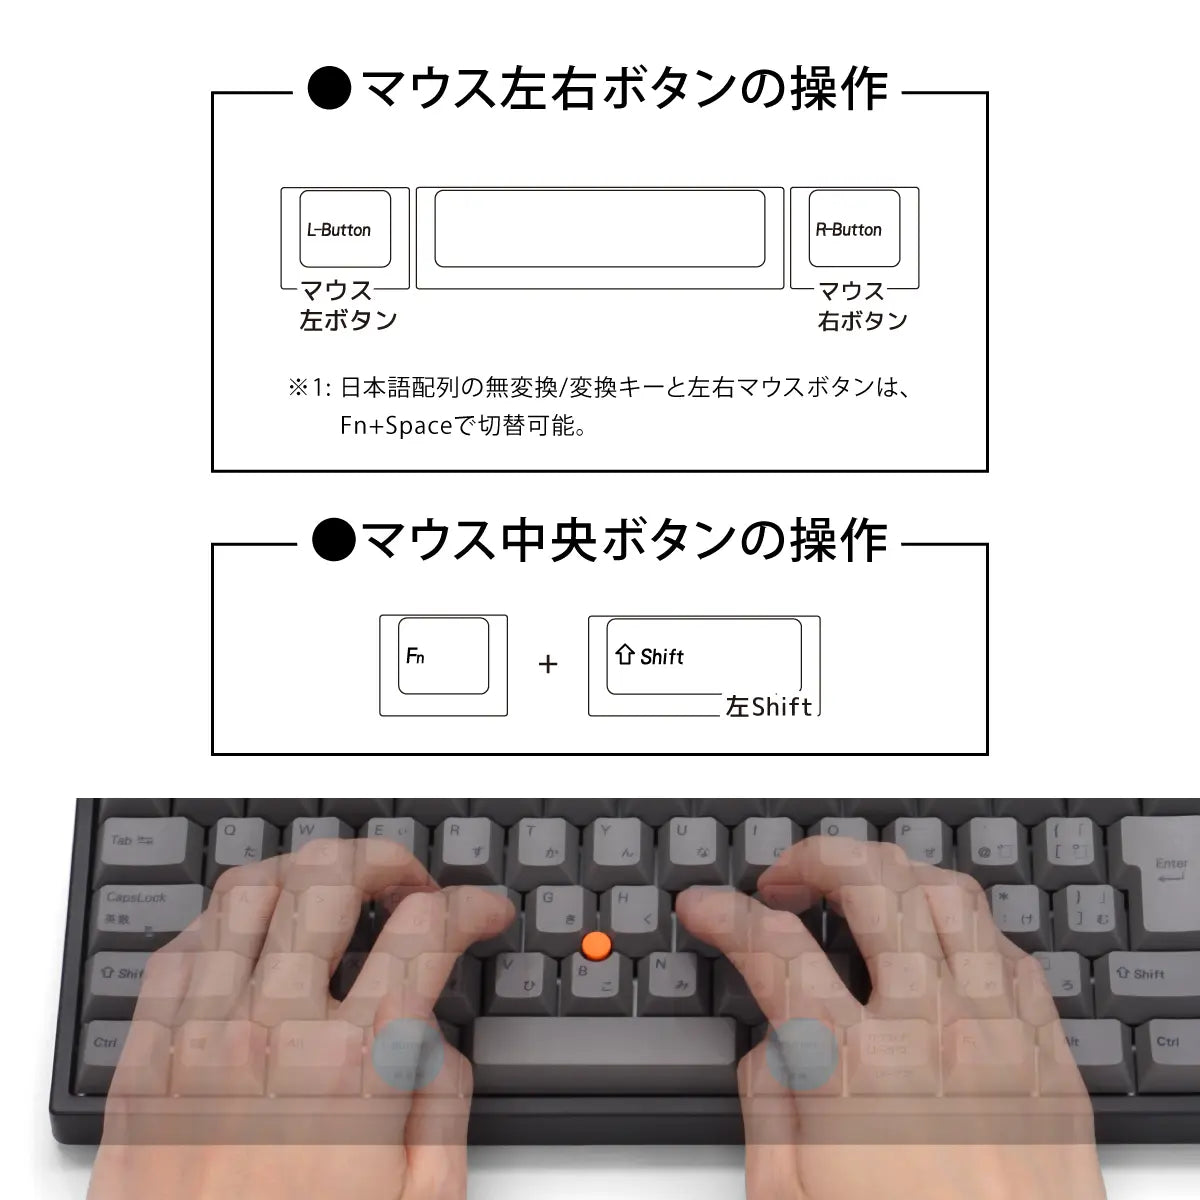 ARCHISSキーボード Quattro TKL（クアトロ ティーケーエル） - 日本語